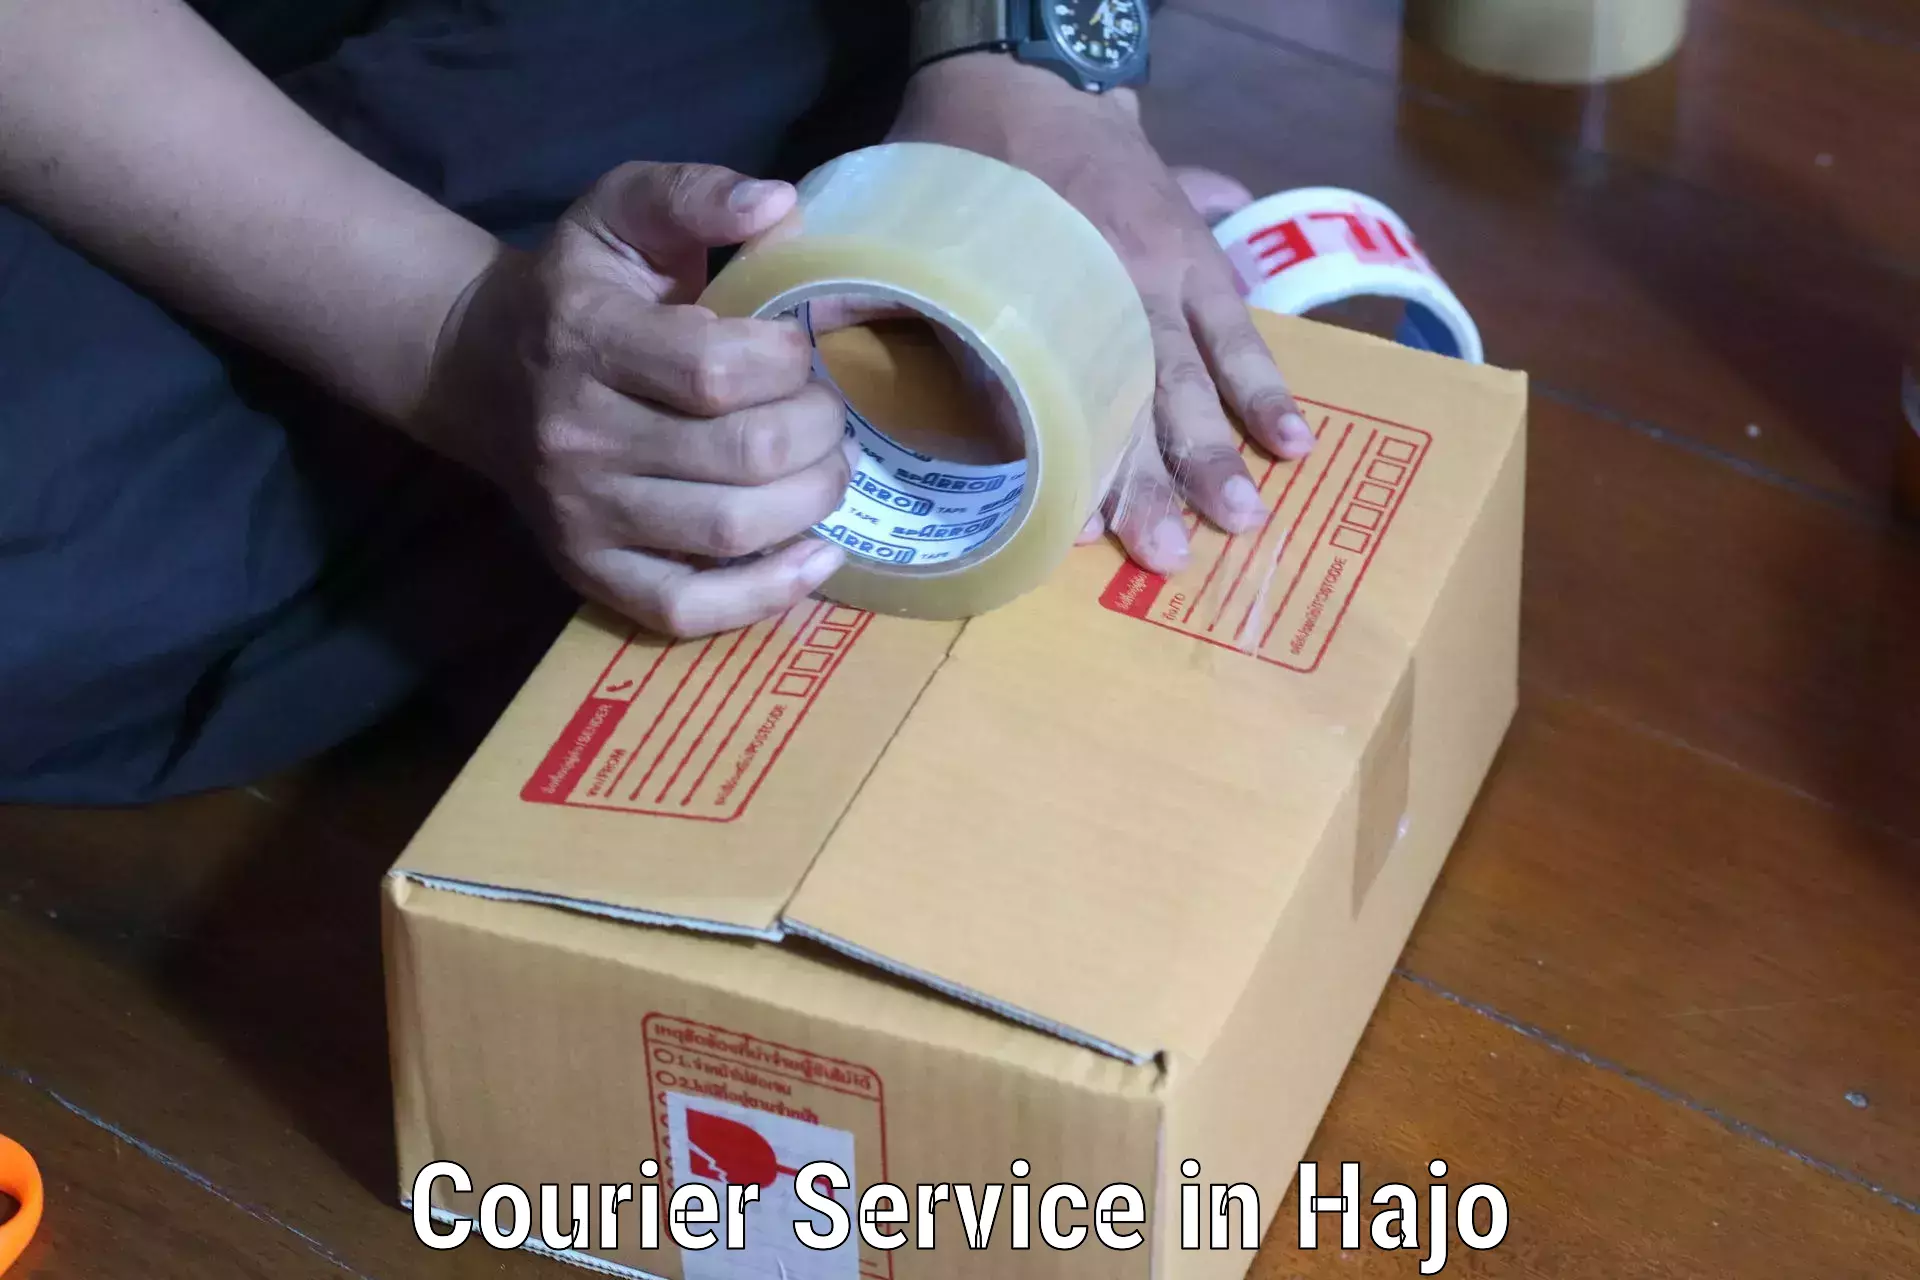 Nationwide shipping capabilities in Hajo